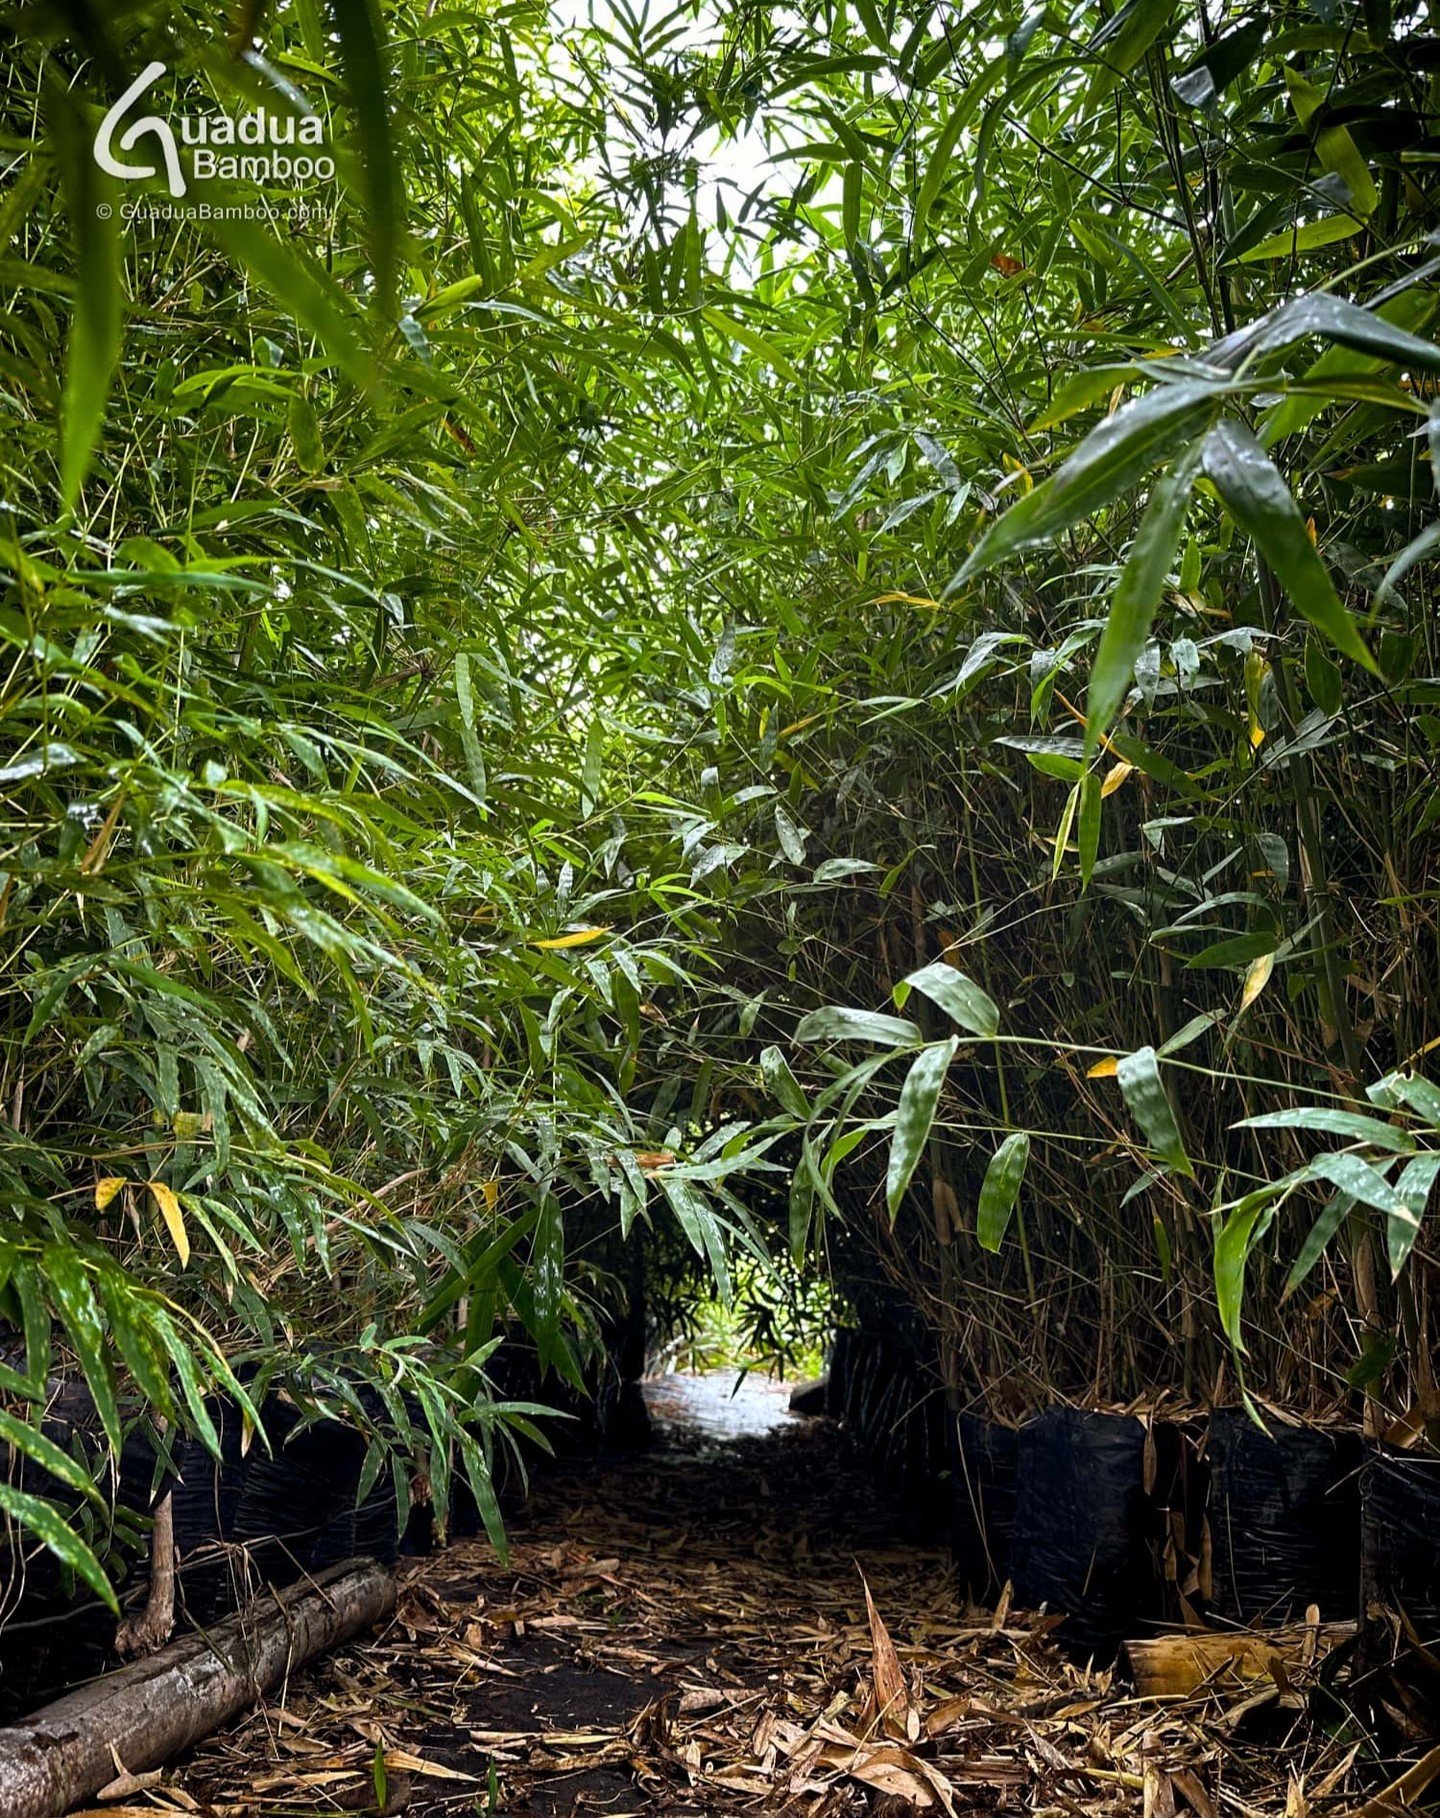 Grandes plantas de Bamb&uacute; Espinosa Gigante (Bambusa bambos) en nuestro vivero. Esta es una de las mejores especies de bamb&uacute; para cercas vivas que deben ser seguras e impenetrables debido a su denso crecimiento y espinas. Los tallos tambi